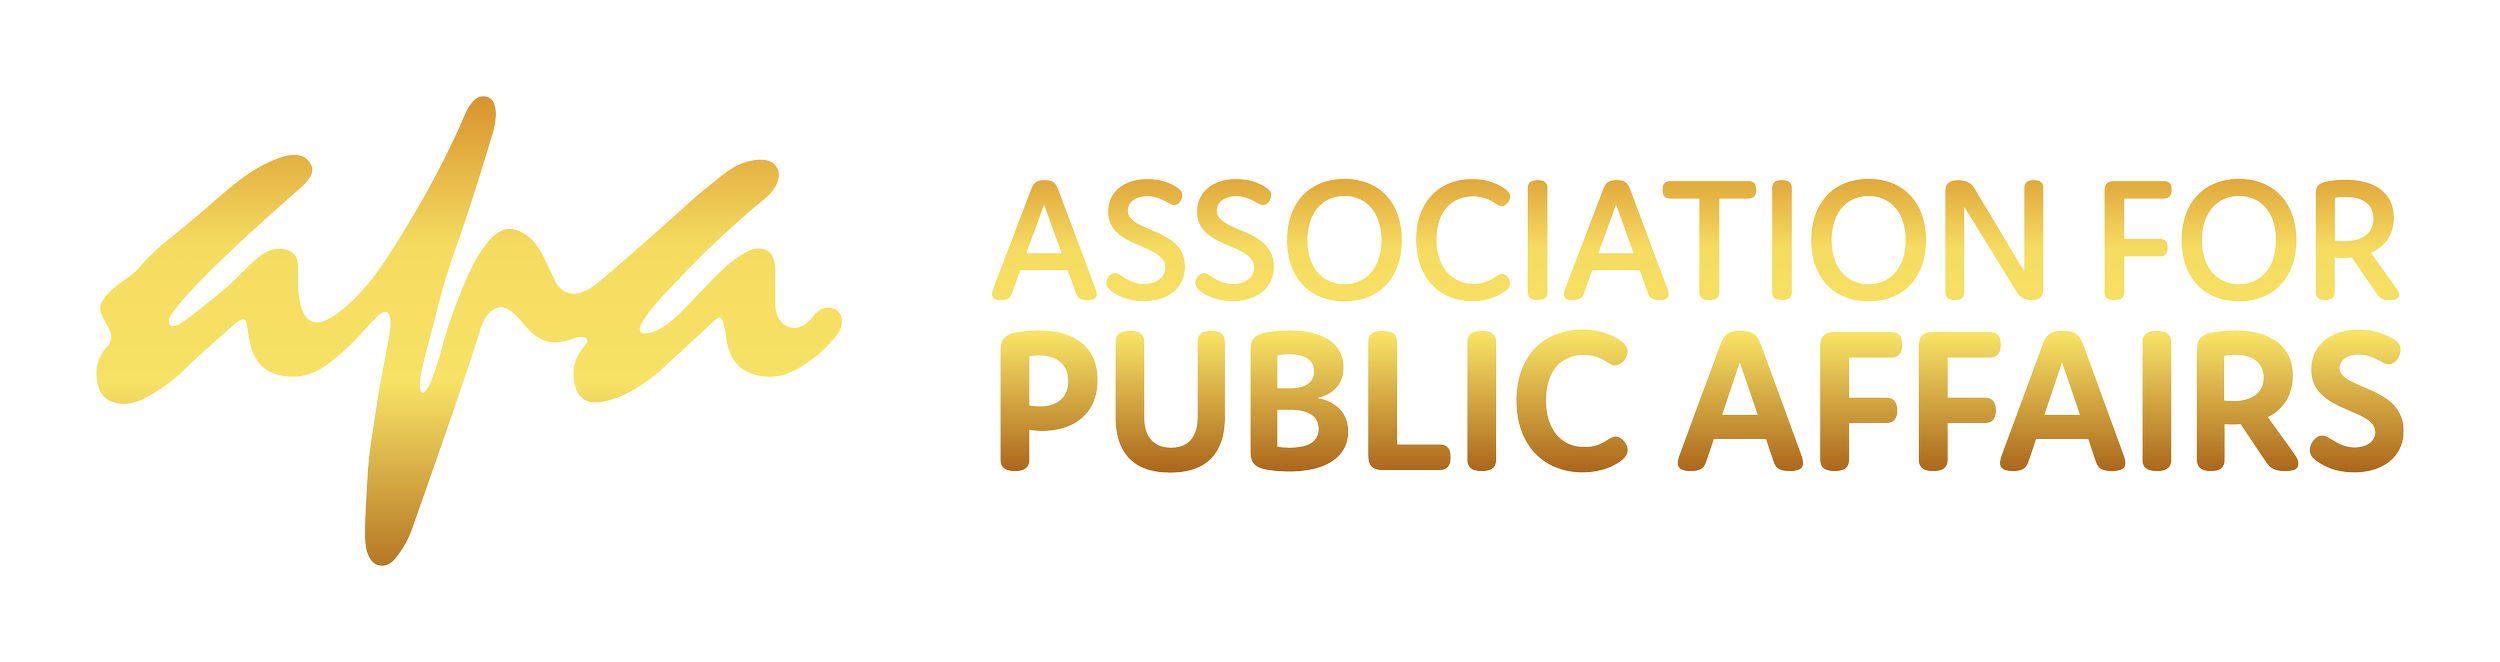 Association for Public Affairs